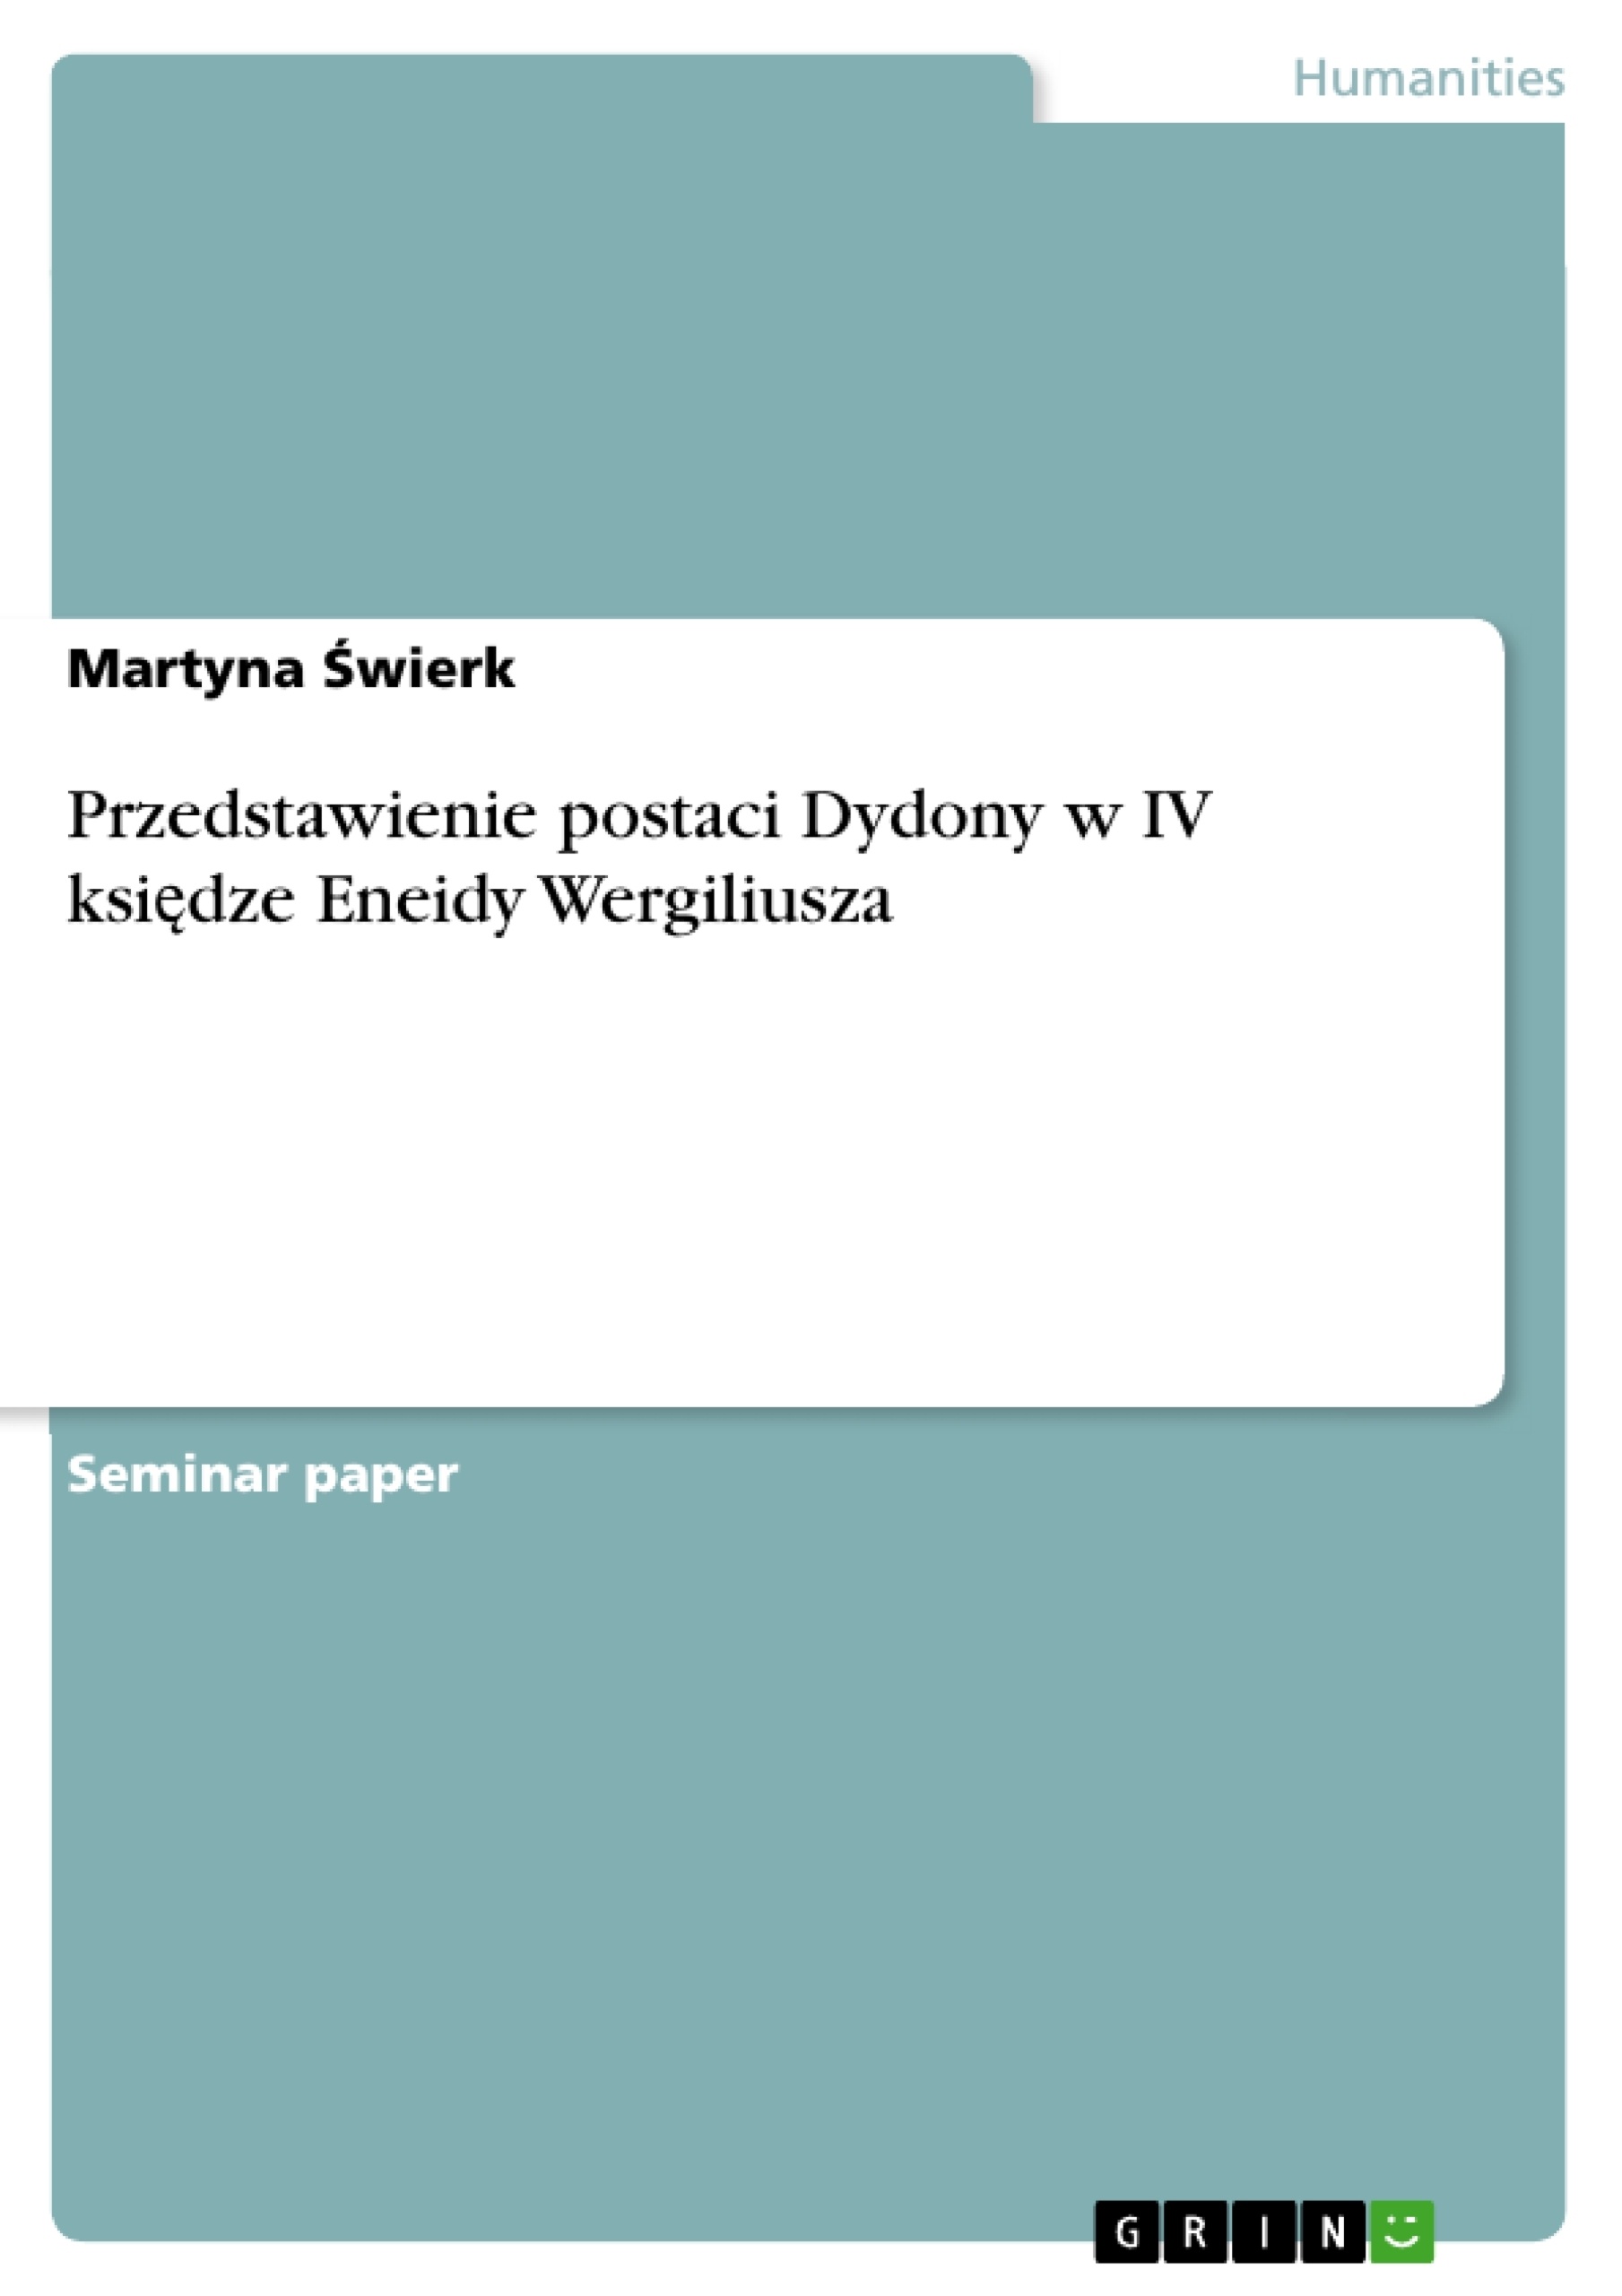 Title: Przedstawienie postaci Dydony w IV księdze Eneidy Wergiliusza